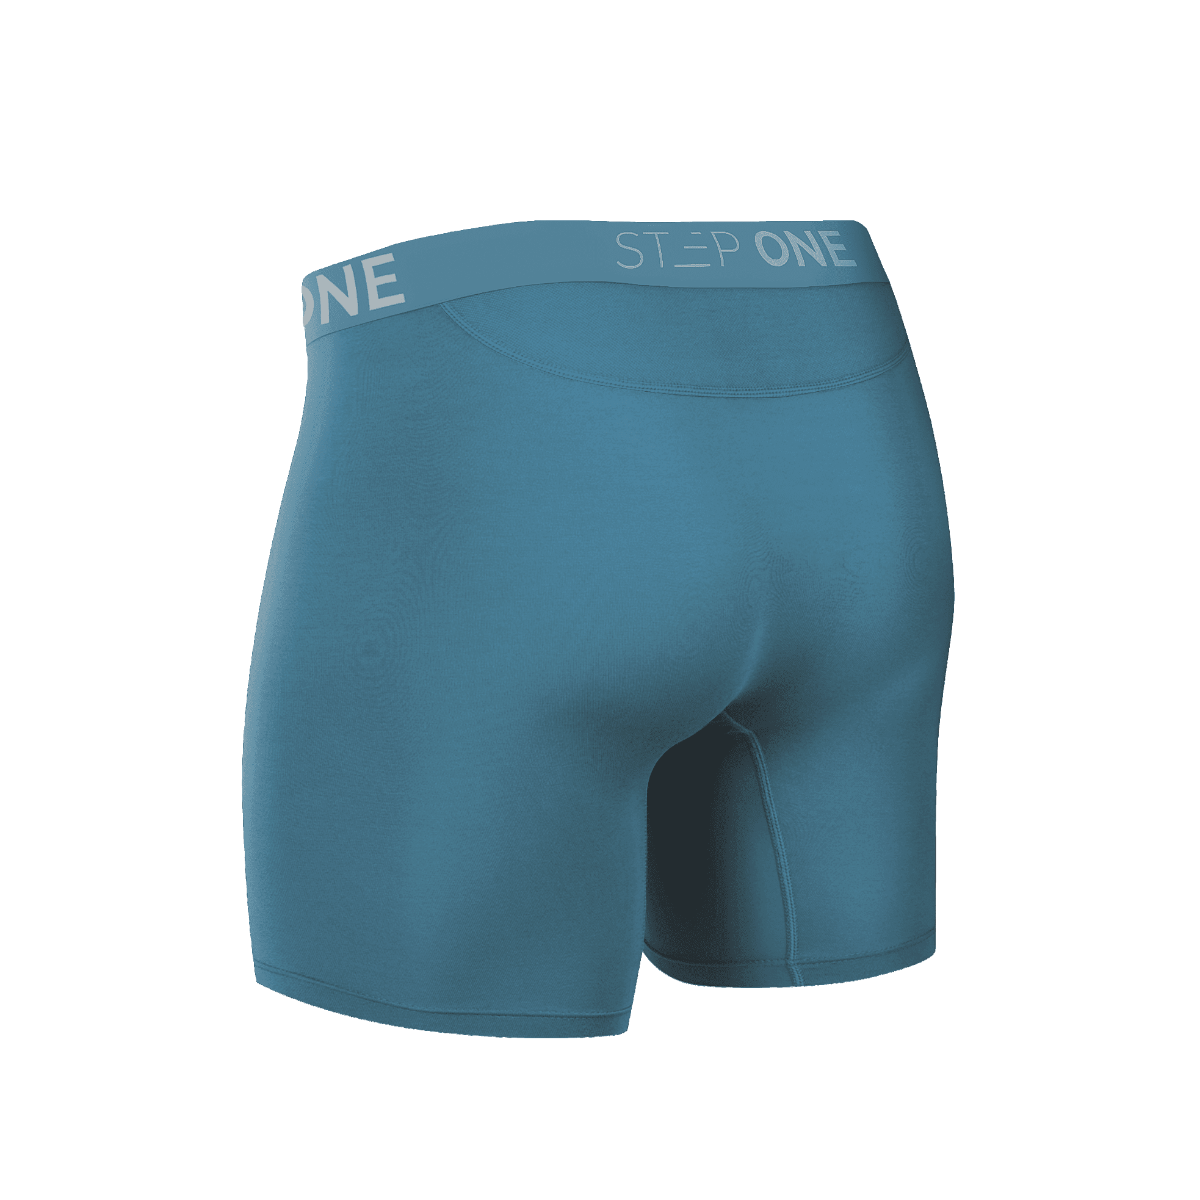 Boxer Brief - Blowfish  Step One Men's Underwear UK